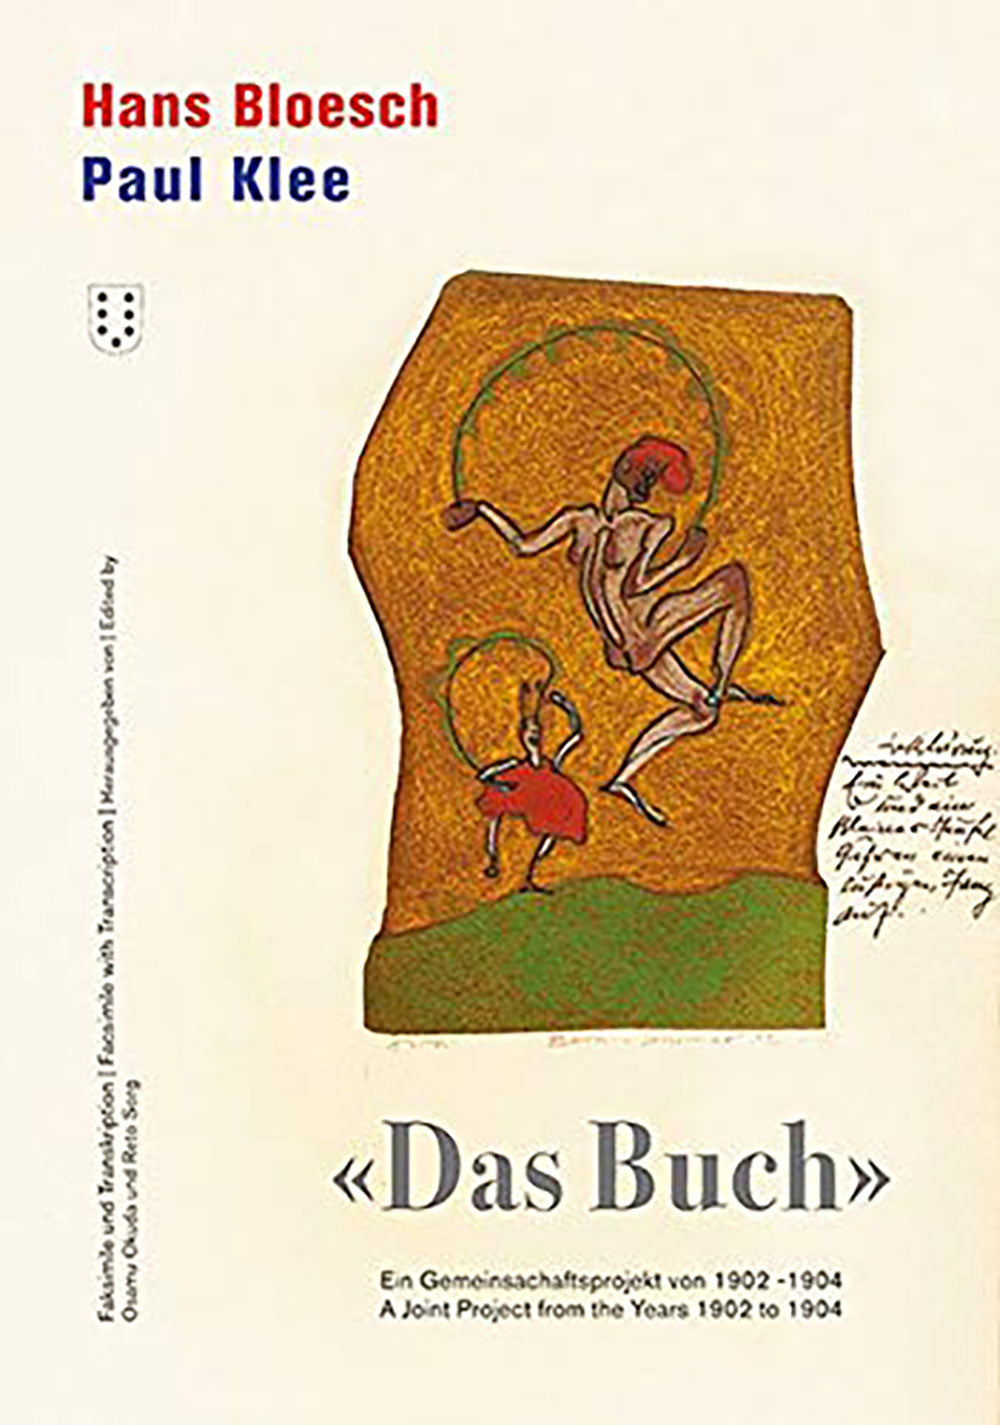 Hans Bloesch and Paul Klee: Das Buch